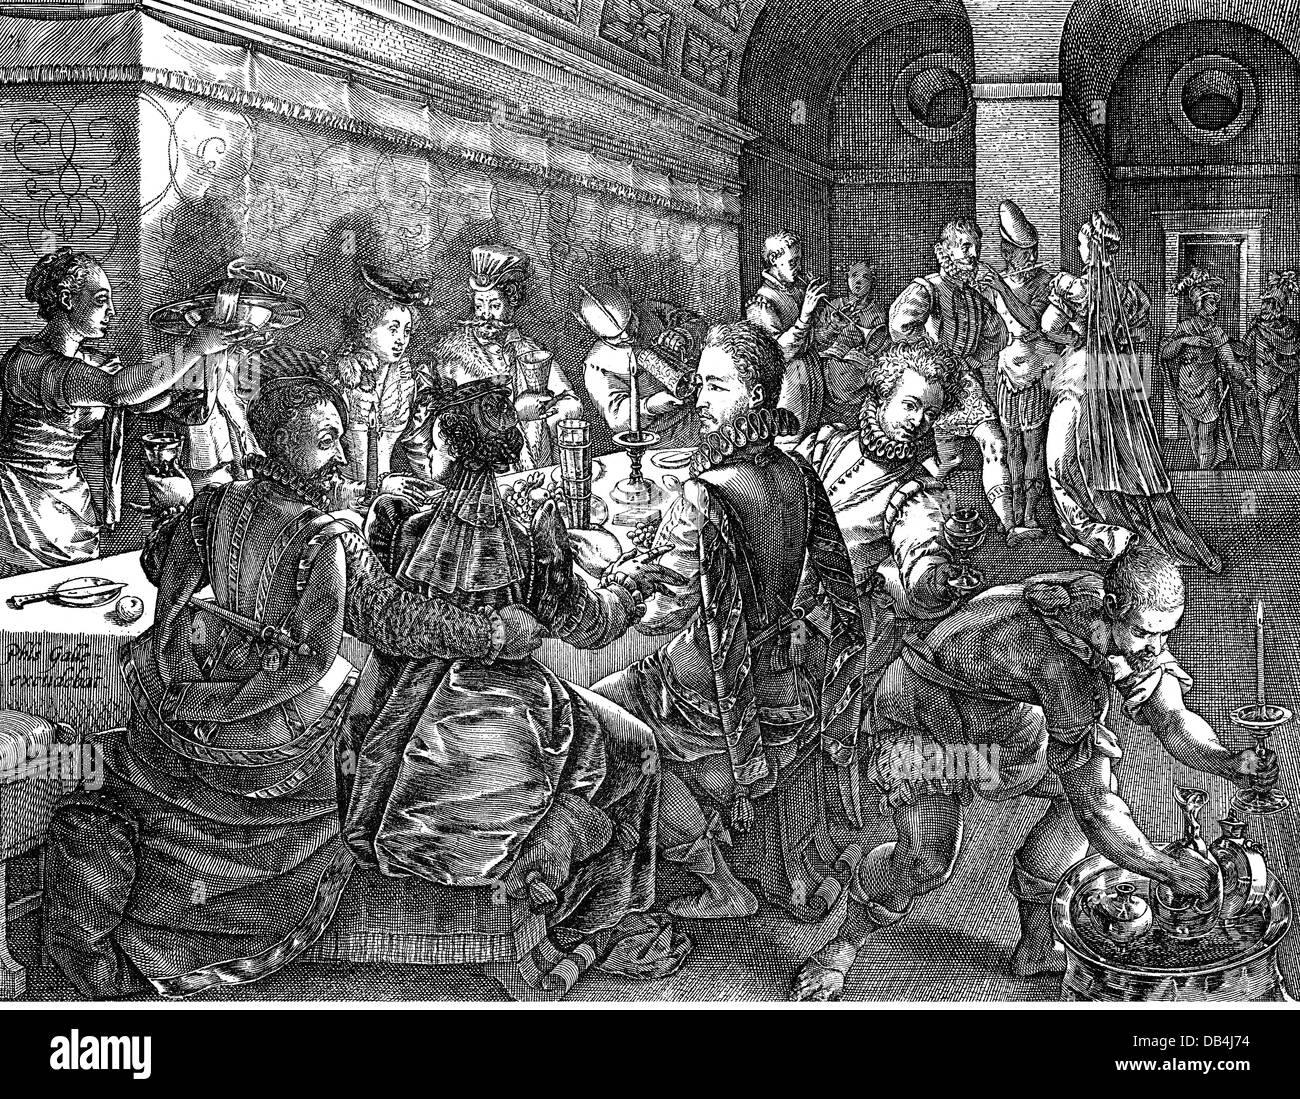 Gastronomie, Mahlzeiten, römische Bankett, nachdem Jan van der Straet (1523  - 1605), Kupferstich, von Philipp Galle (1537 - 1612), aus dem 16.  Jahrhundert, 16. Jahrhundert, Grafik, Grafiken, Niederlande, essen, essen,  essen, halbe